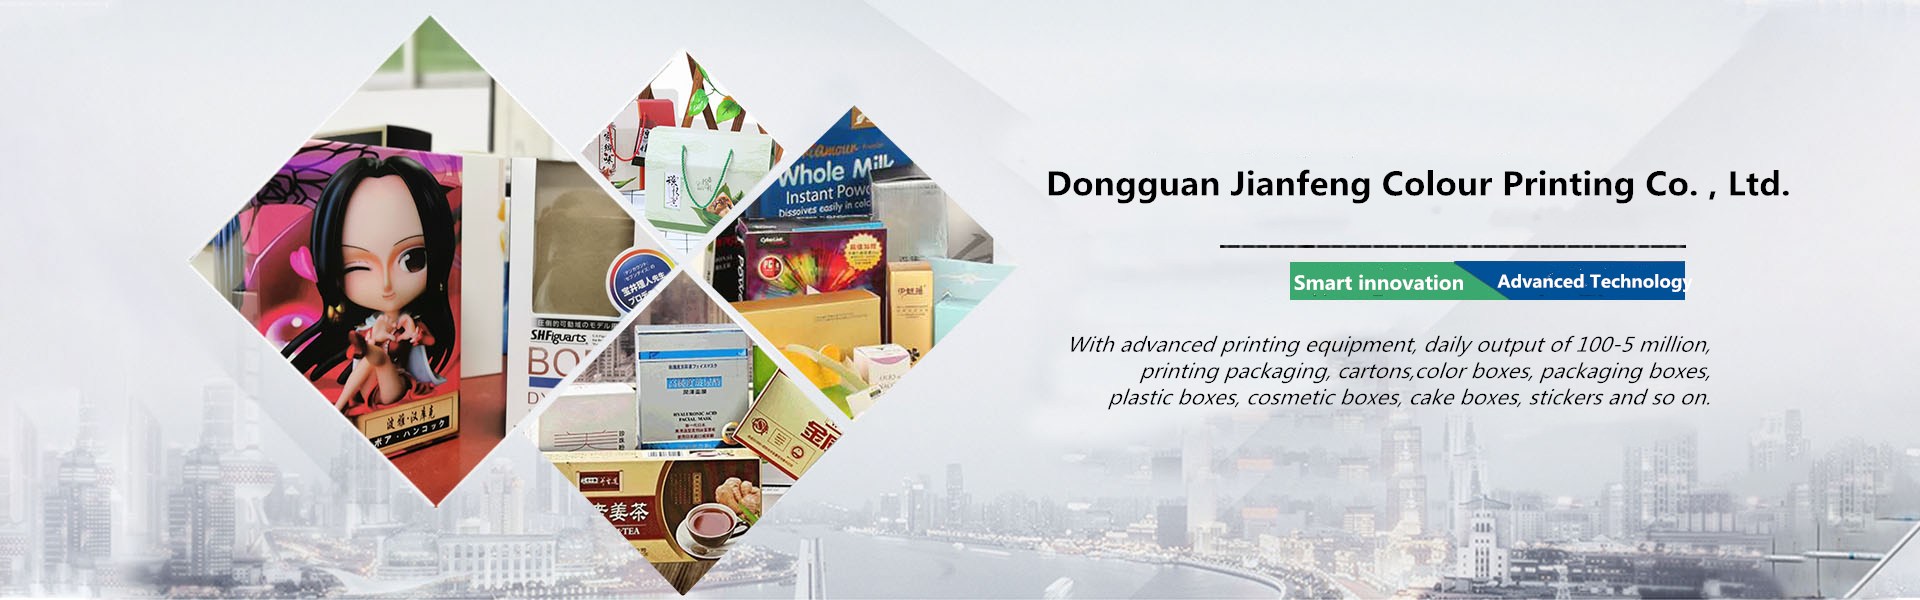 Dongguan Jianfeng Colour Printing Co. , Ltd.